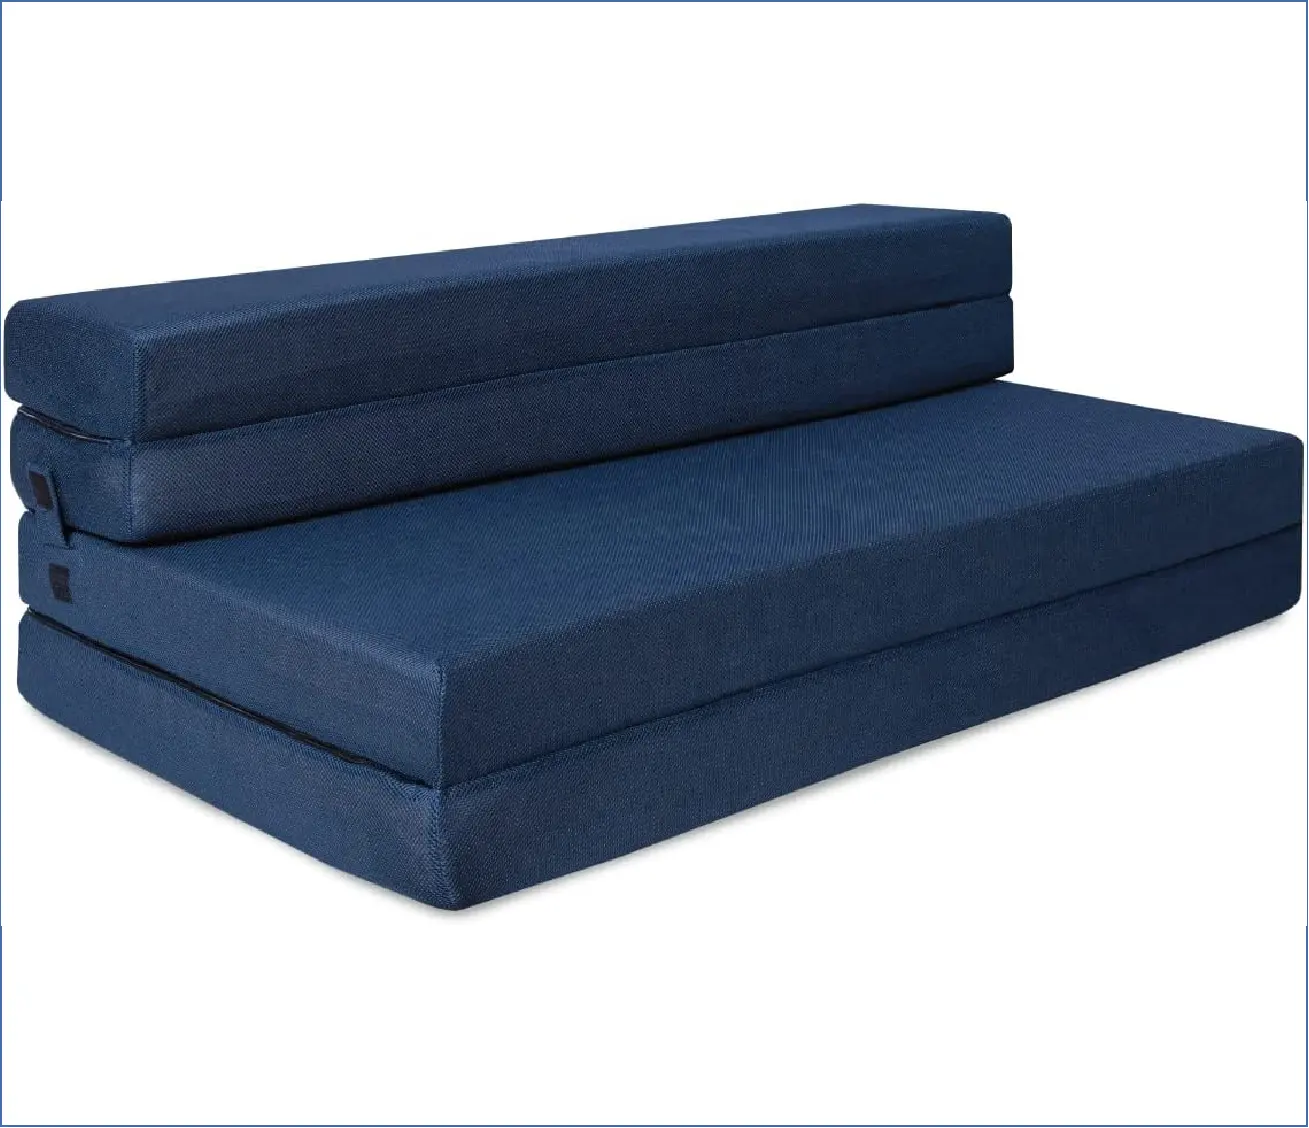 Colchón plegable de espuma de alta densidad con cubierta móvil y lavable, Popular, para sala de estar, sofá cama